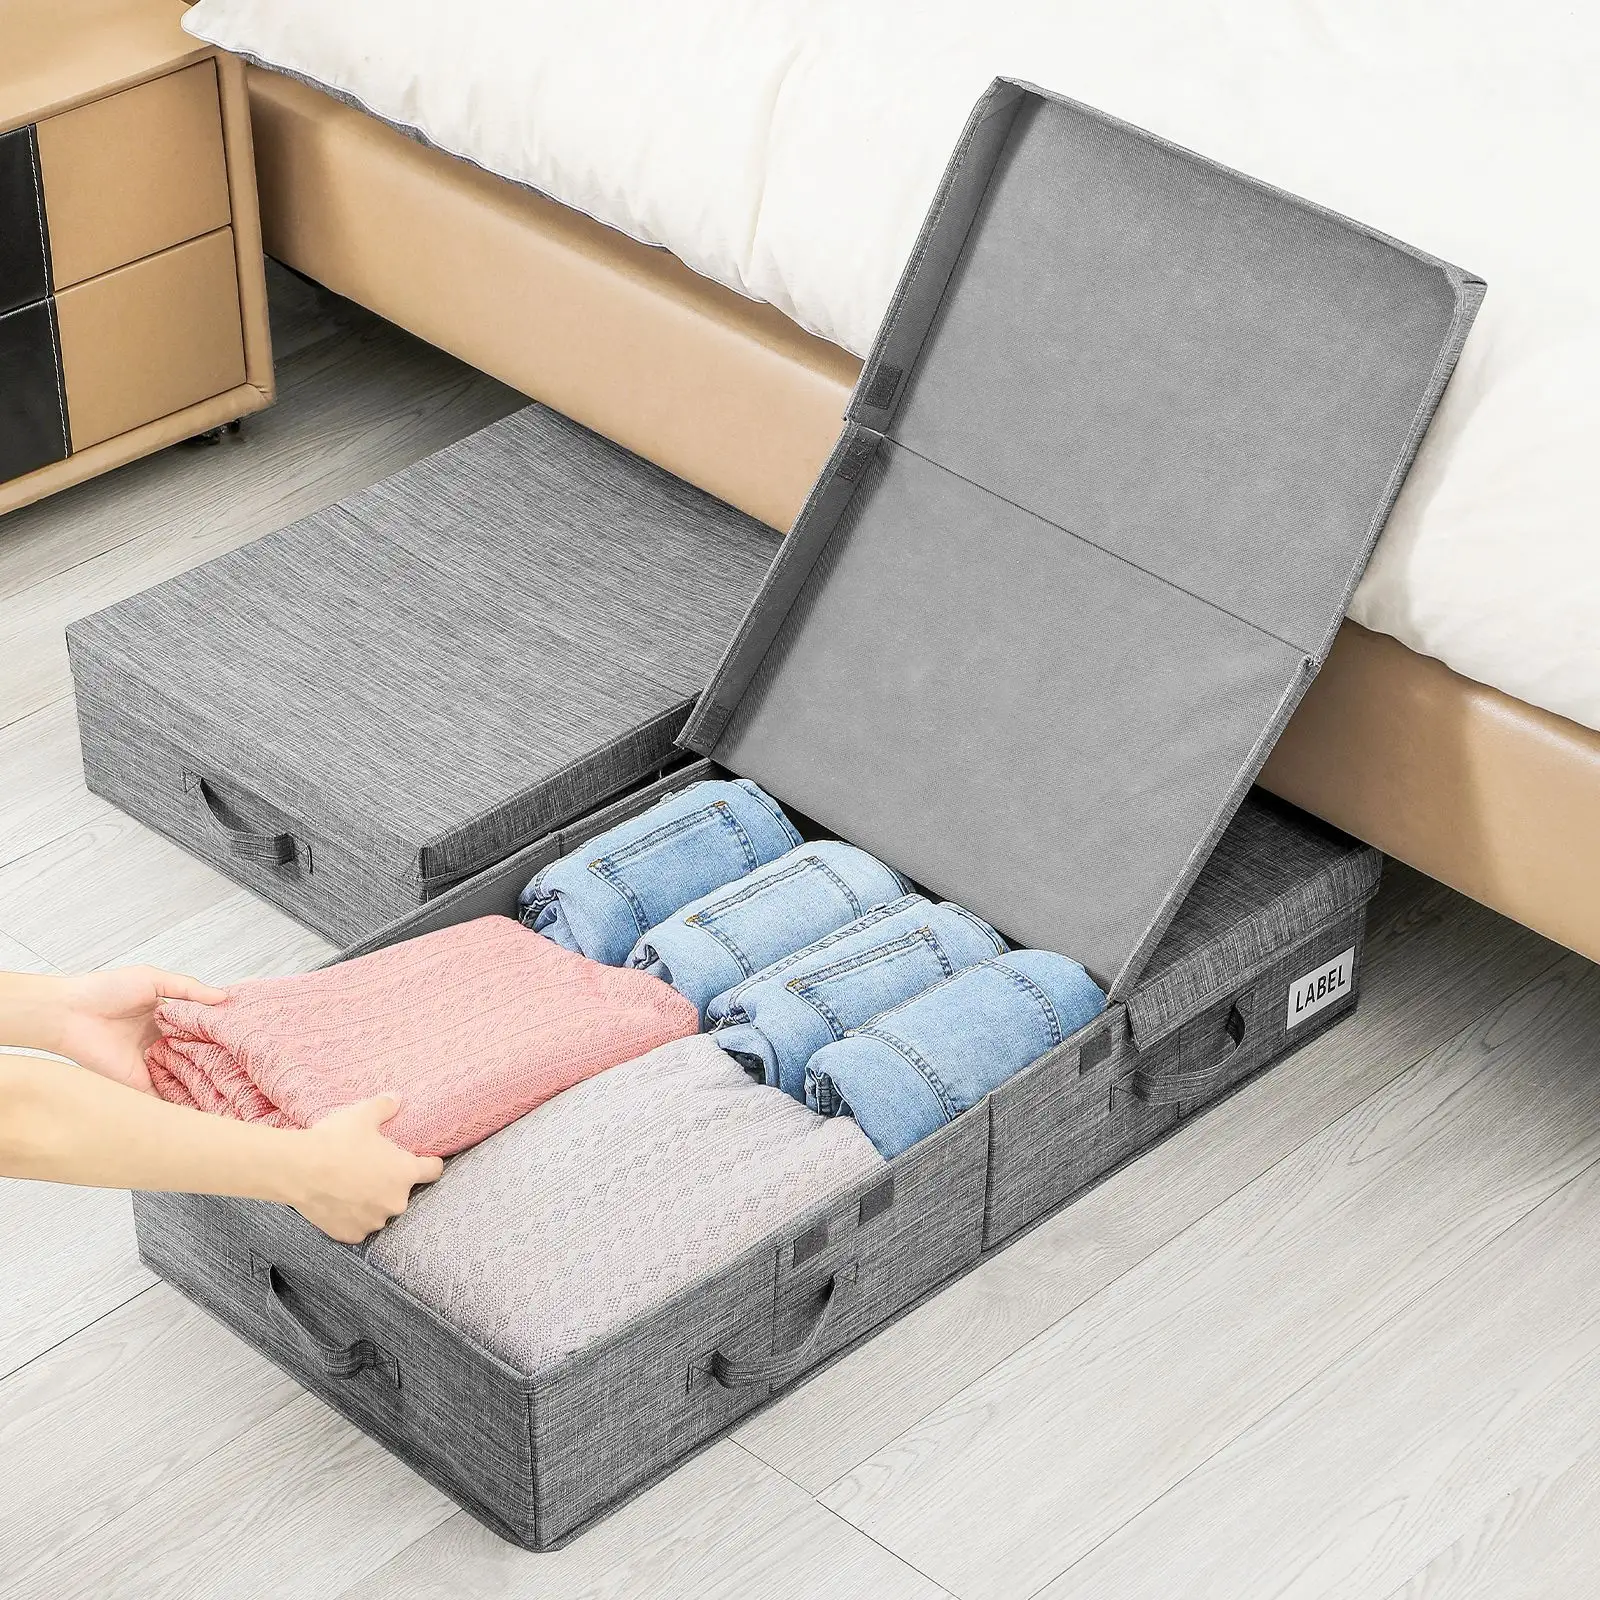 बिस्तर के निचले हिस्से पर कवर के साथ कपड़े भंडारण बॉक्स, कंबल रखने के लिए फोल्डेबल अलमारी, खिलौने कपड़े भंडारण बॉक्स